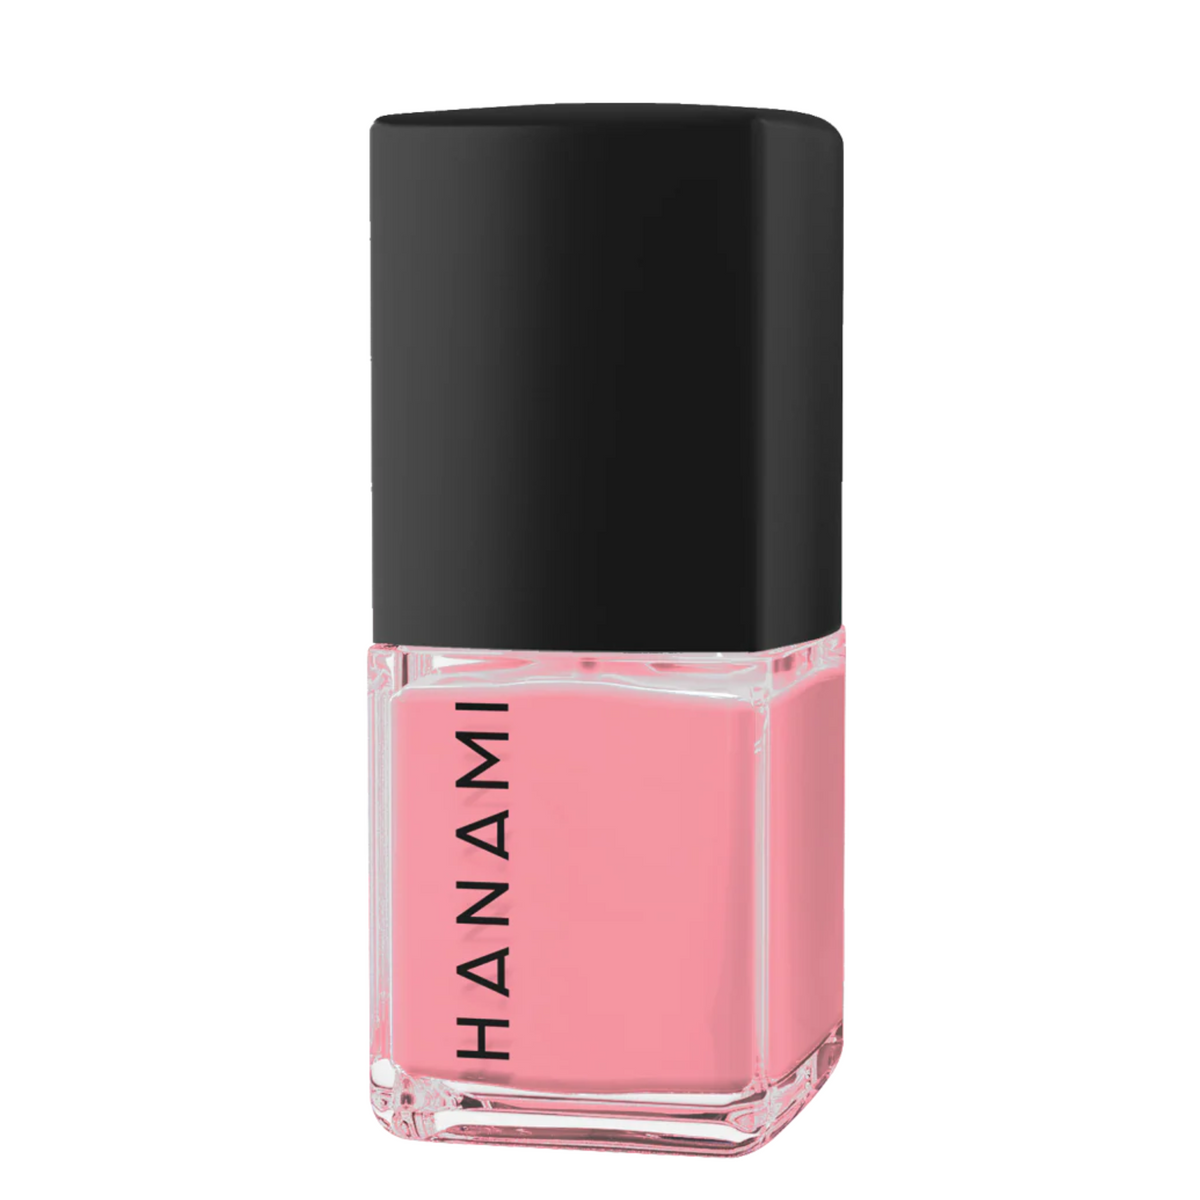 Hanami - Nail Polish - Pink Moon